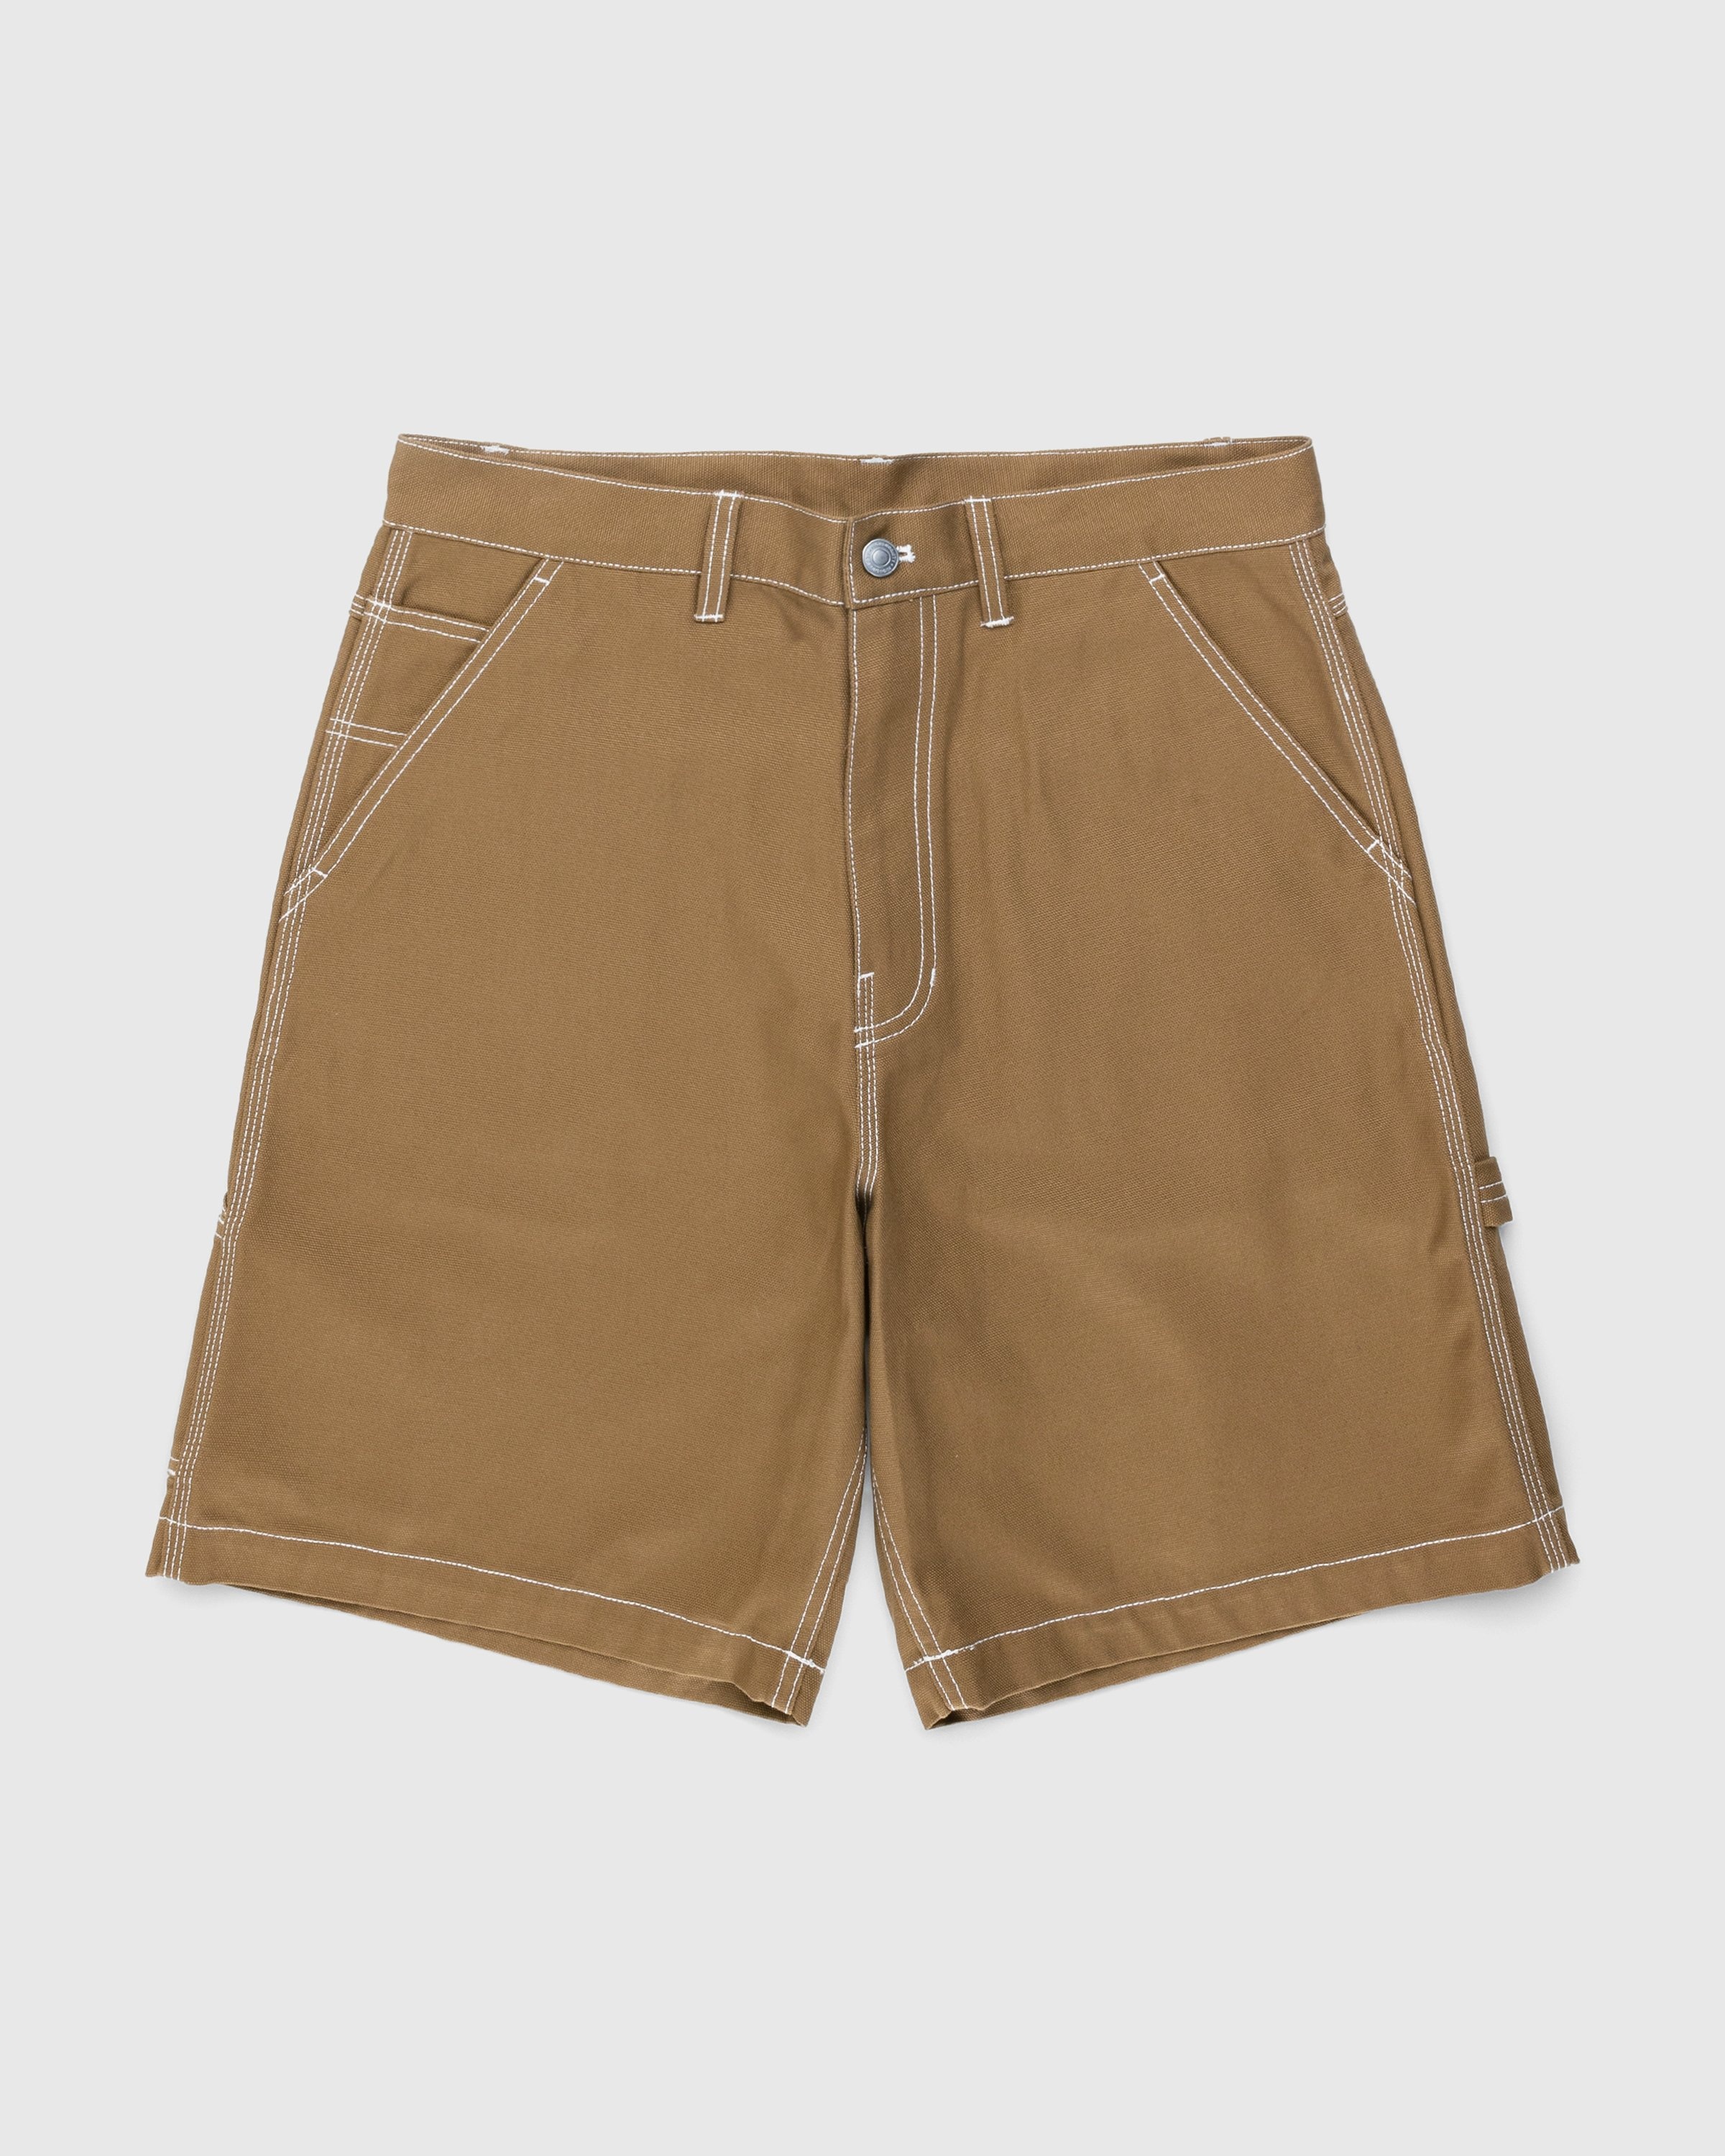 Highsnobiety – Carpenter Shorts Dark Beige - Shorts - Brown - Image 1